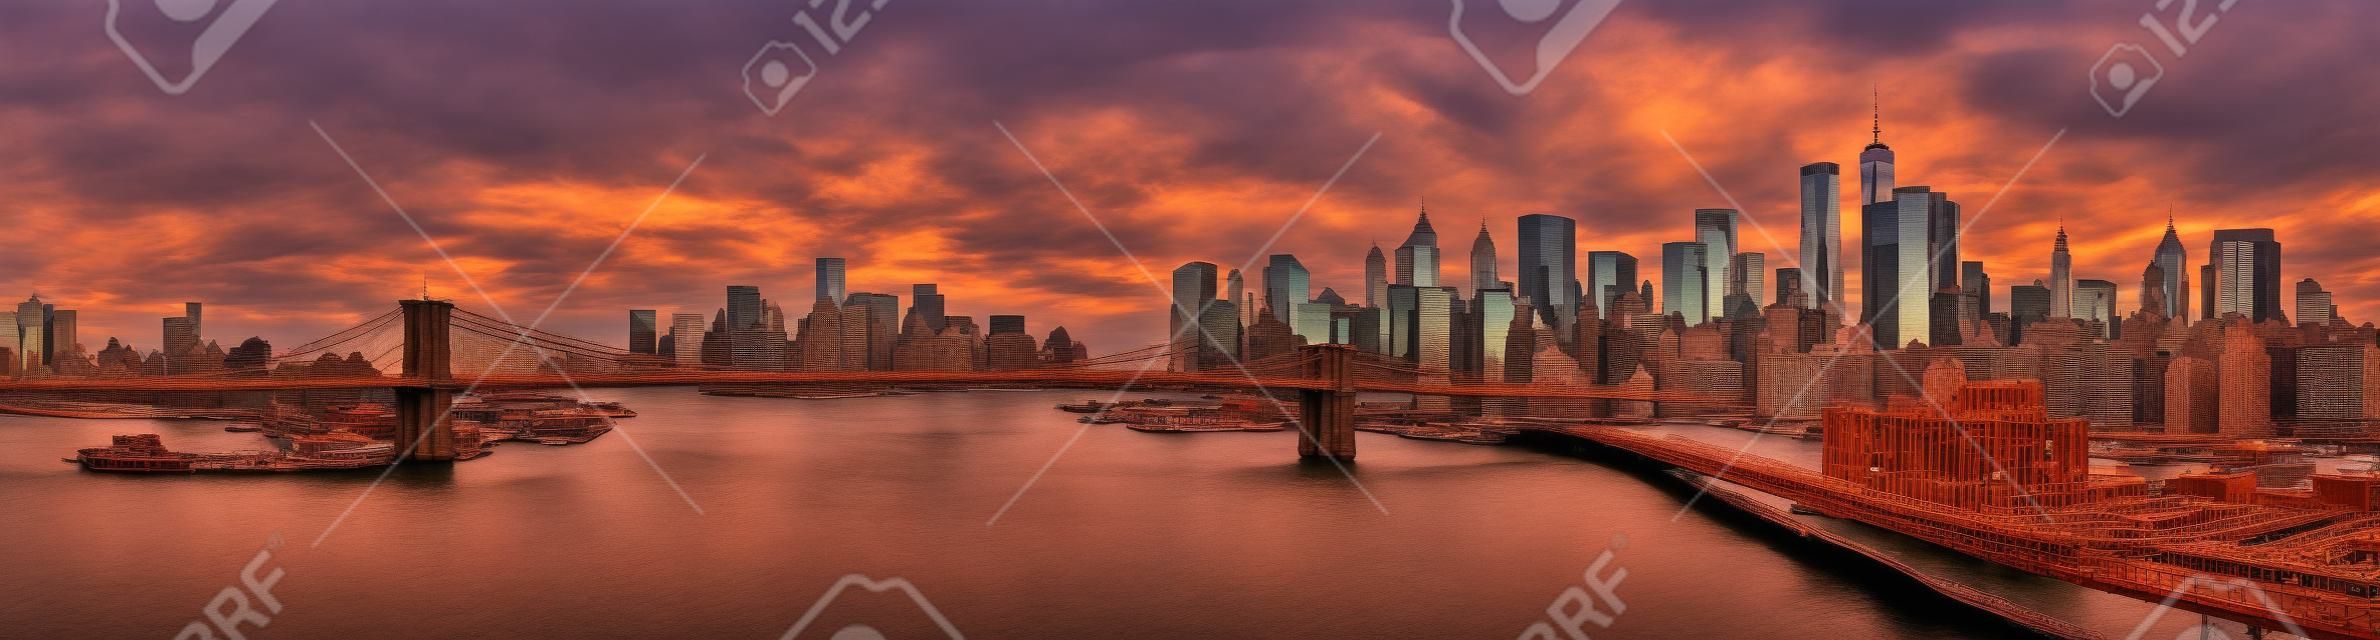 Brooklyn-Brücke Panorama bei Sonnenuntergang. Das Wahrzeichen überspannt zwischen Brooklyn und der New Yorker Financial District Skyline, durch den Freedom Tower dominiert.